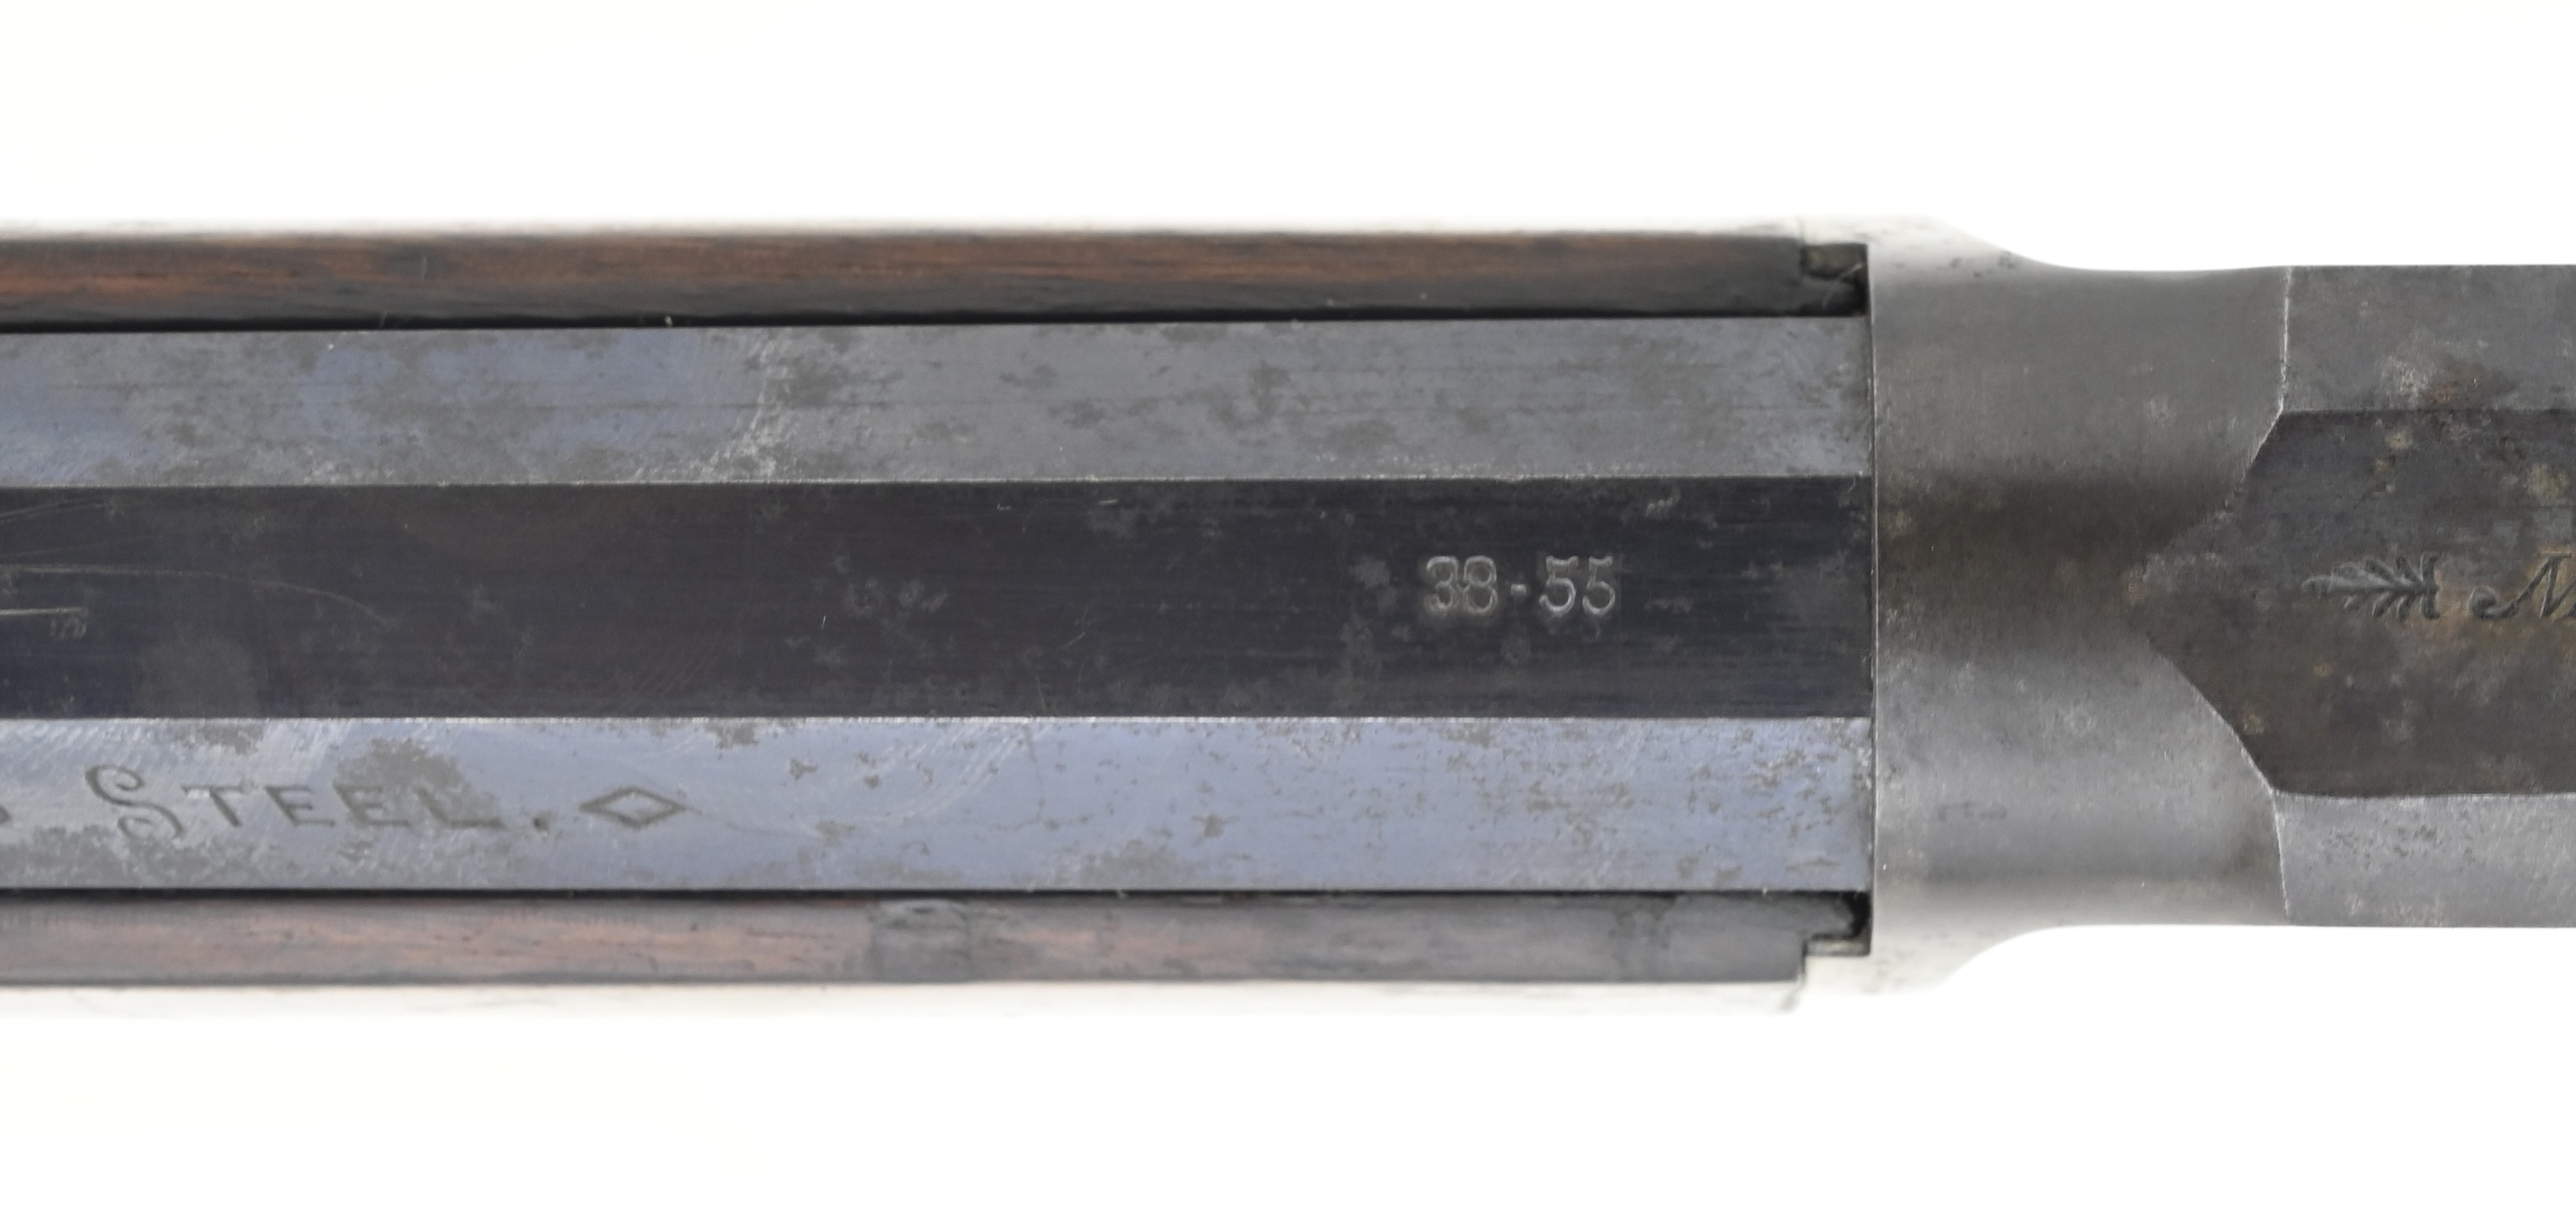 marlin firearms serial numbers 19241